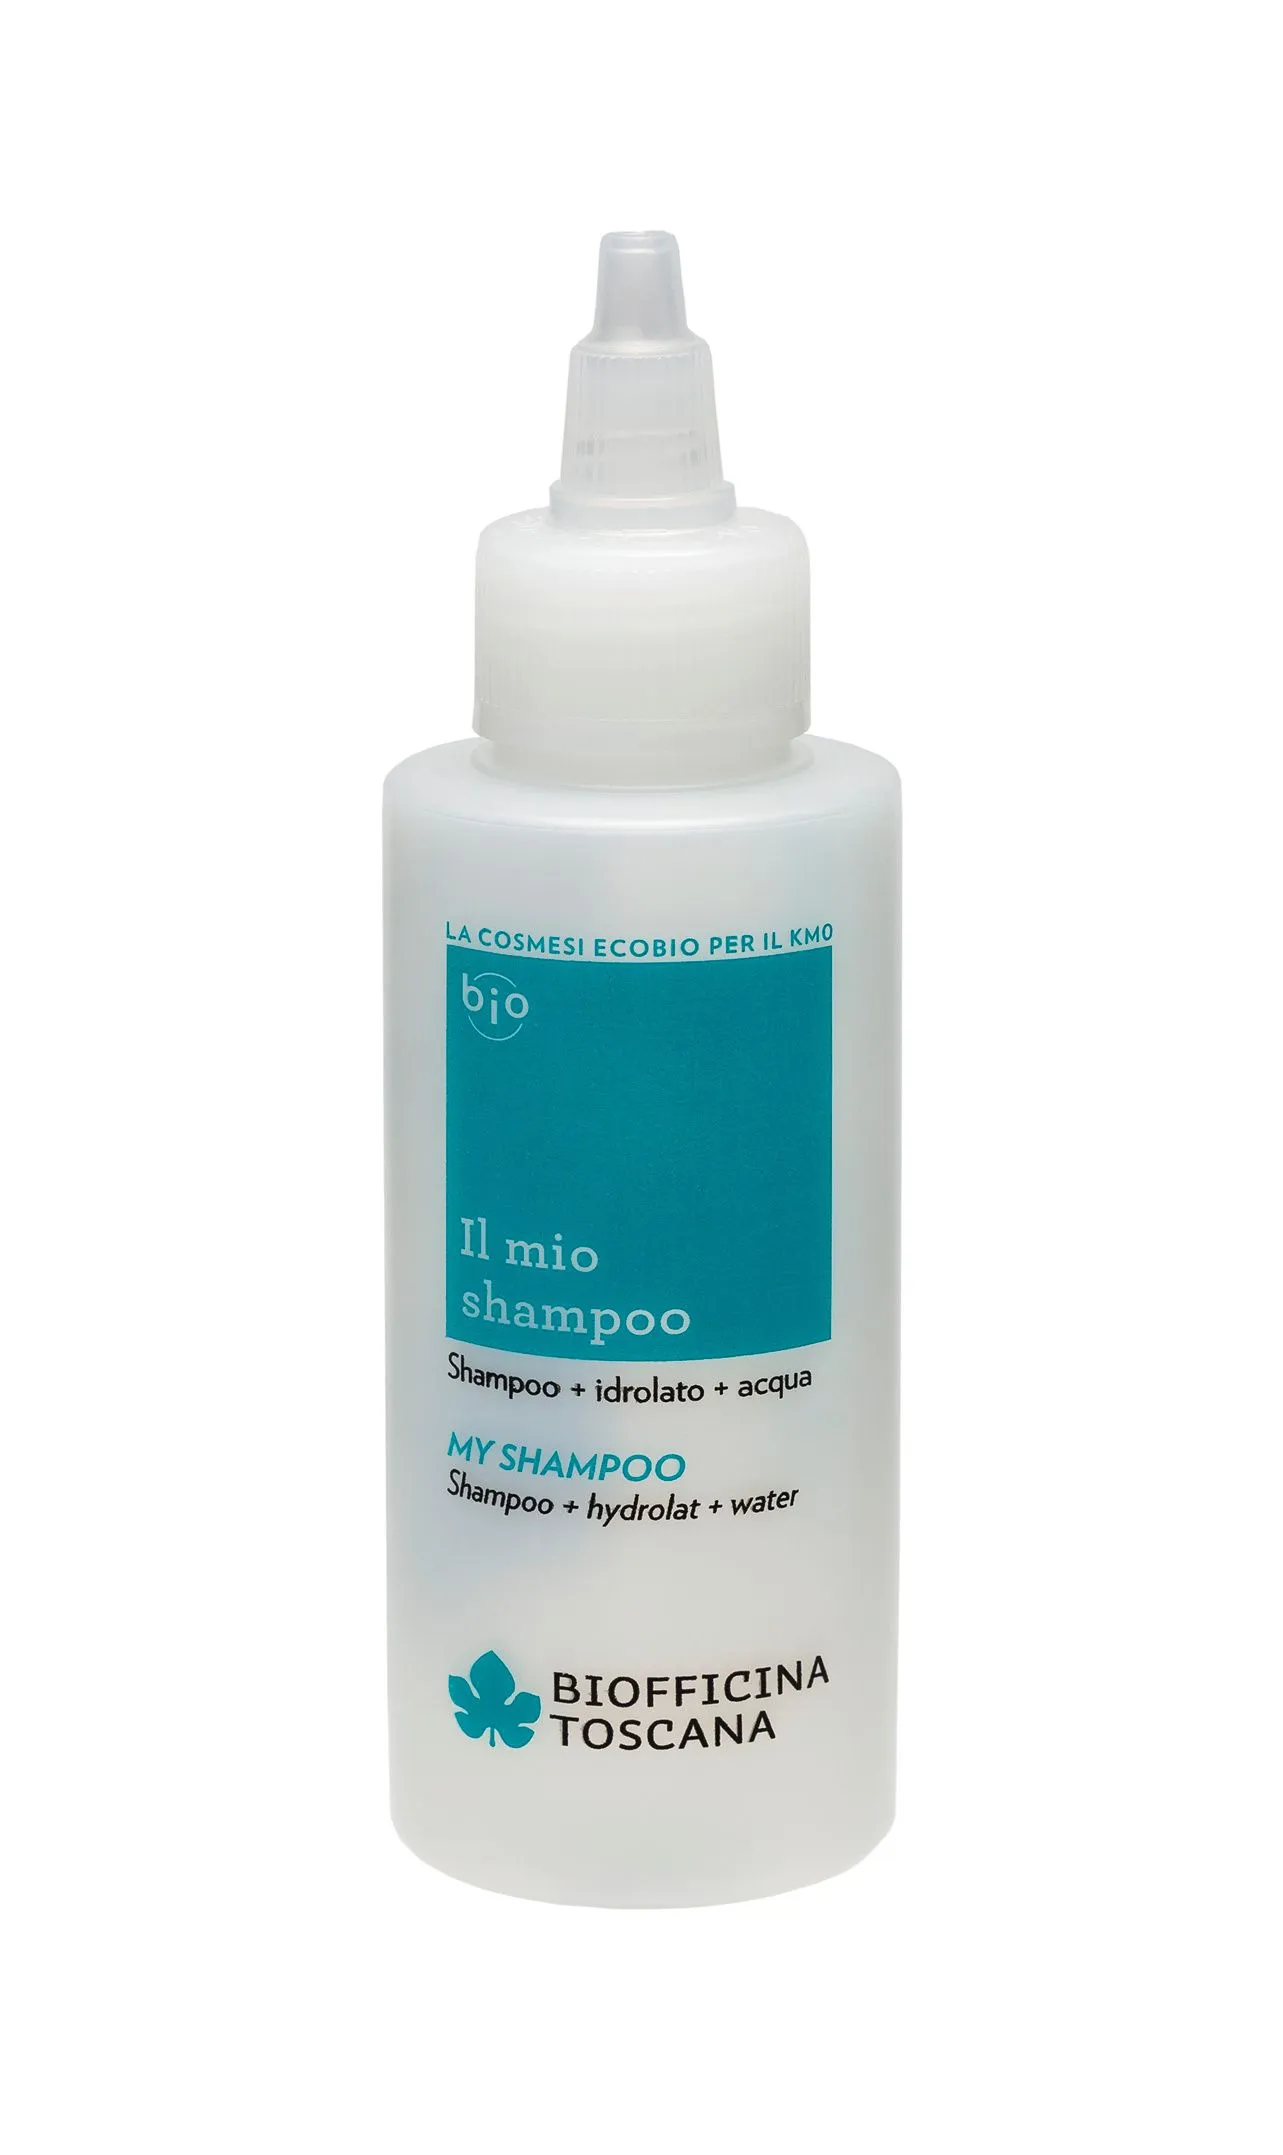 Biofficina Toscana My shampoo Tyrkysová lahvička pro přípravu vlastního šampónu 100 ml